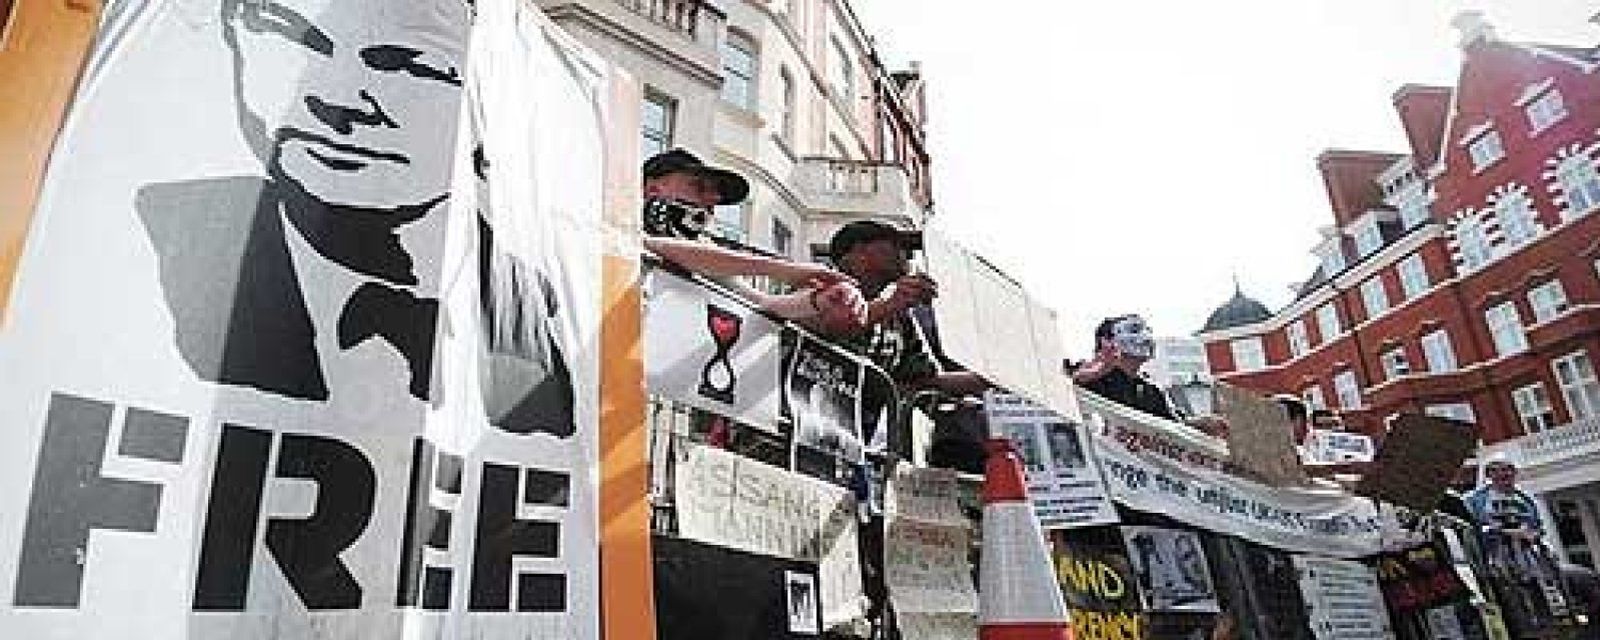 Foto: Anonymous ataca webs del Gobierno británico para apoyar a Assange